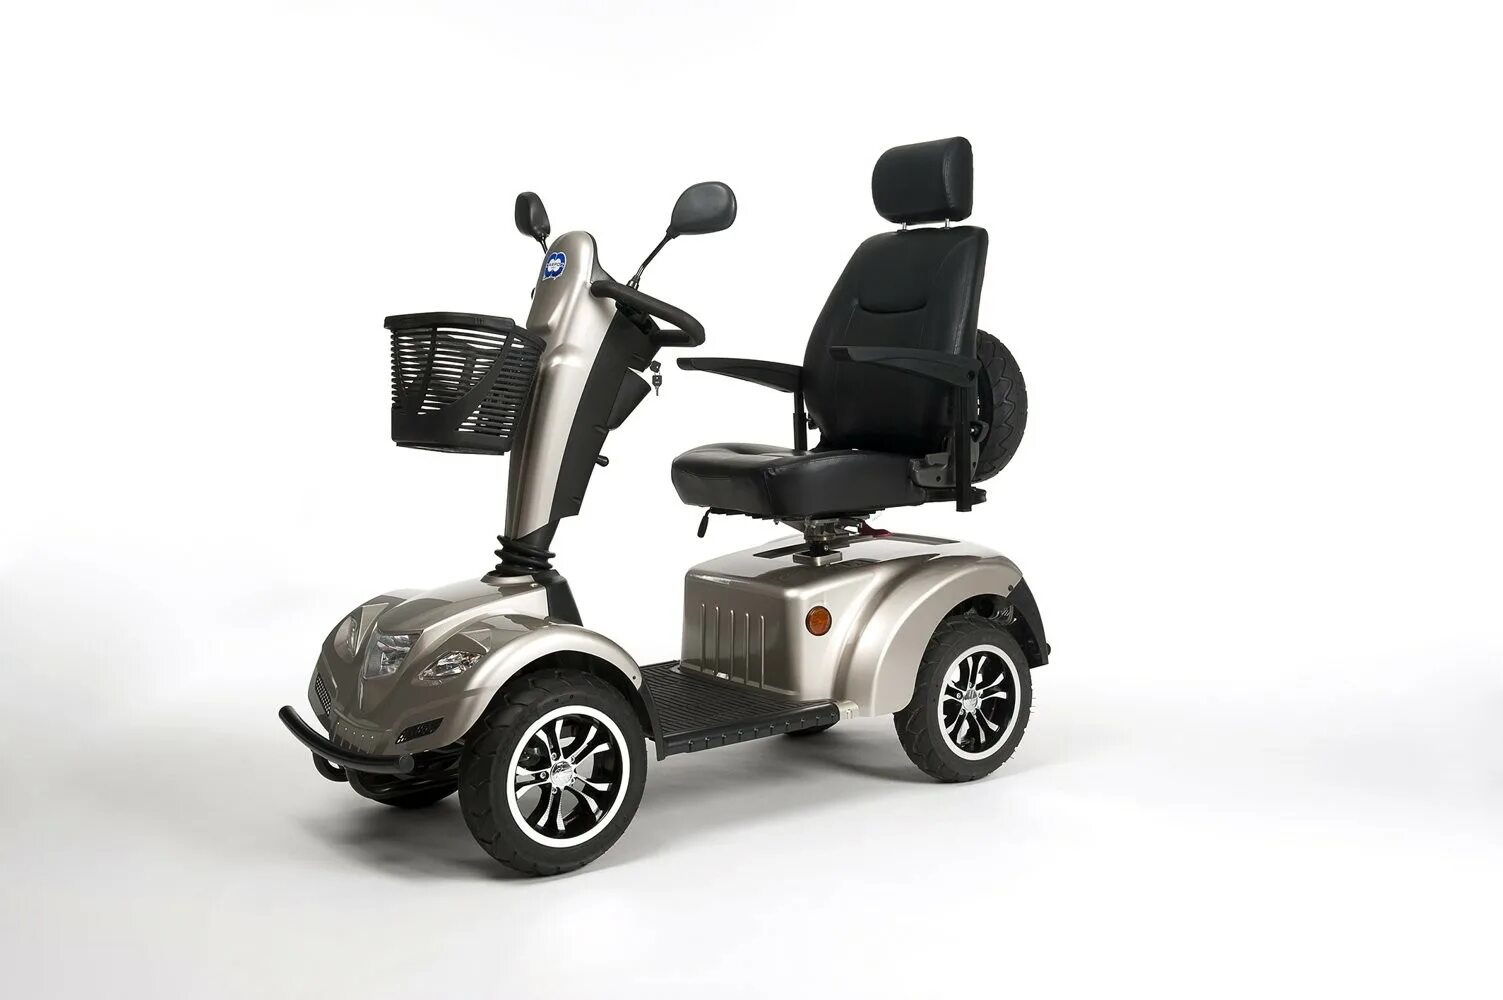 Электроскутер для инвалидов модель fr510gdx leon4. Электрическая инвалидная кресло-коляска скутер Vermeiren. Скутер для пожилых Vermeiren Ceres 4. Скутер для инвалидов МТ-96, кресло-коляска с электроприводом. Скутер для инвалидов и пожилых